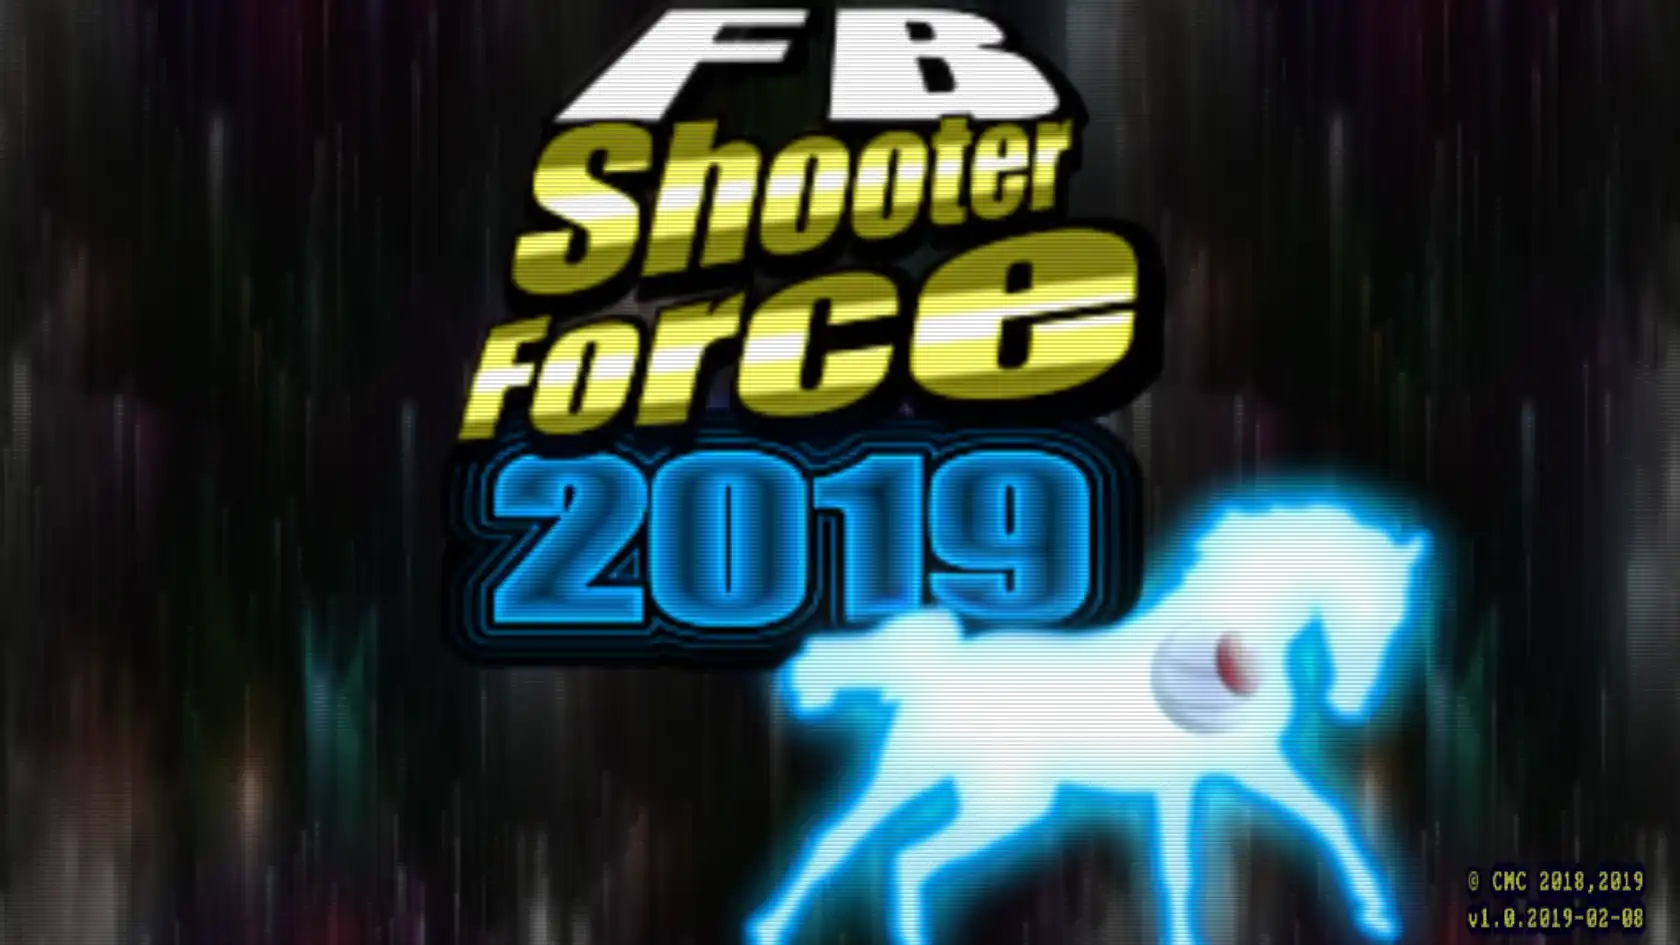 Unduh alat web atau aplikasi web FB Shooter Force 2019 untuk dijalankan di Windows online melalui Linux online